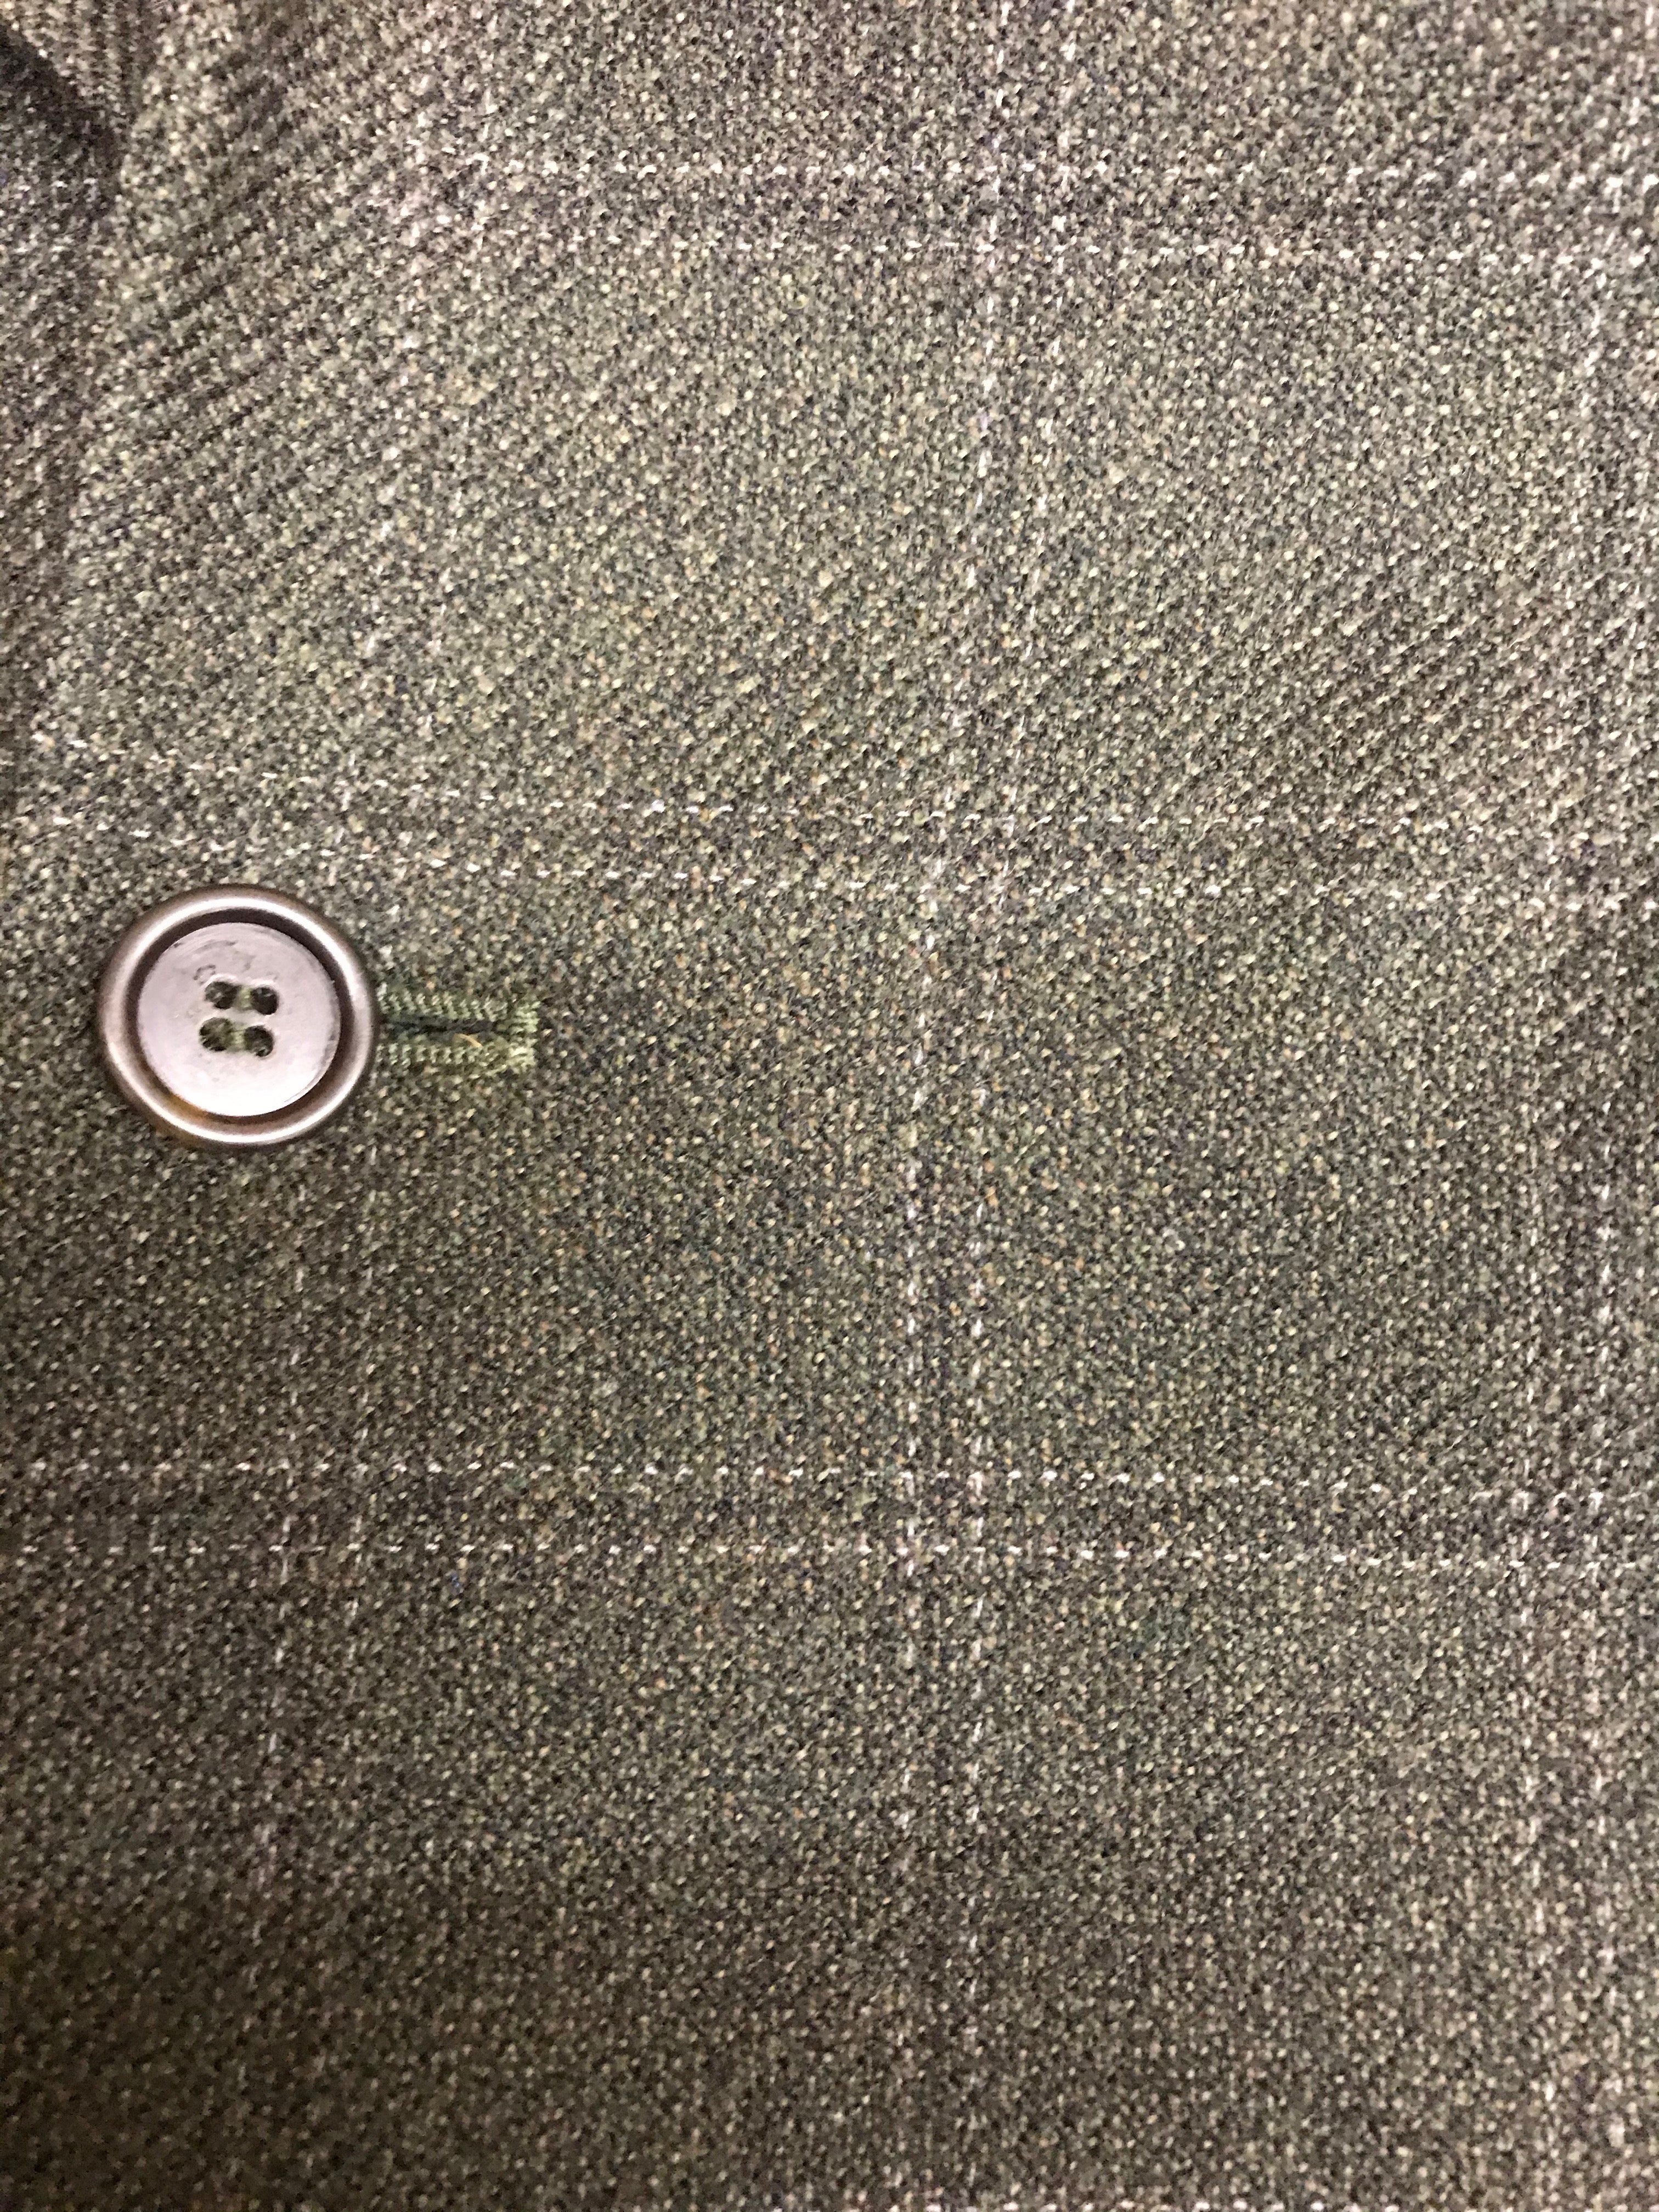 Tweed-Anzug Jacke Gr.52